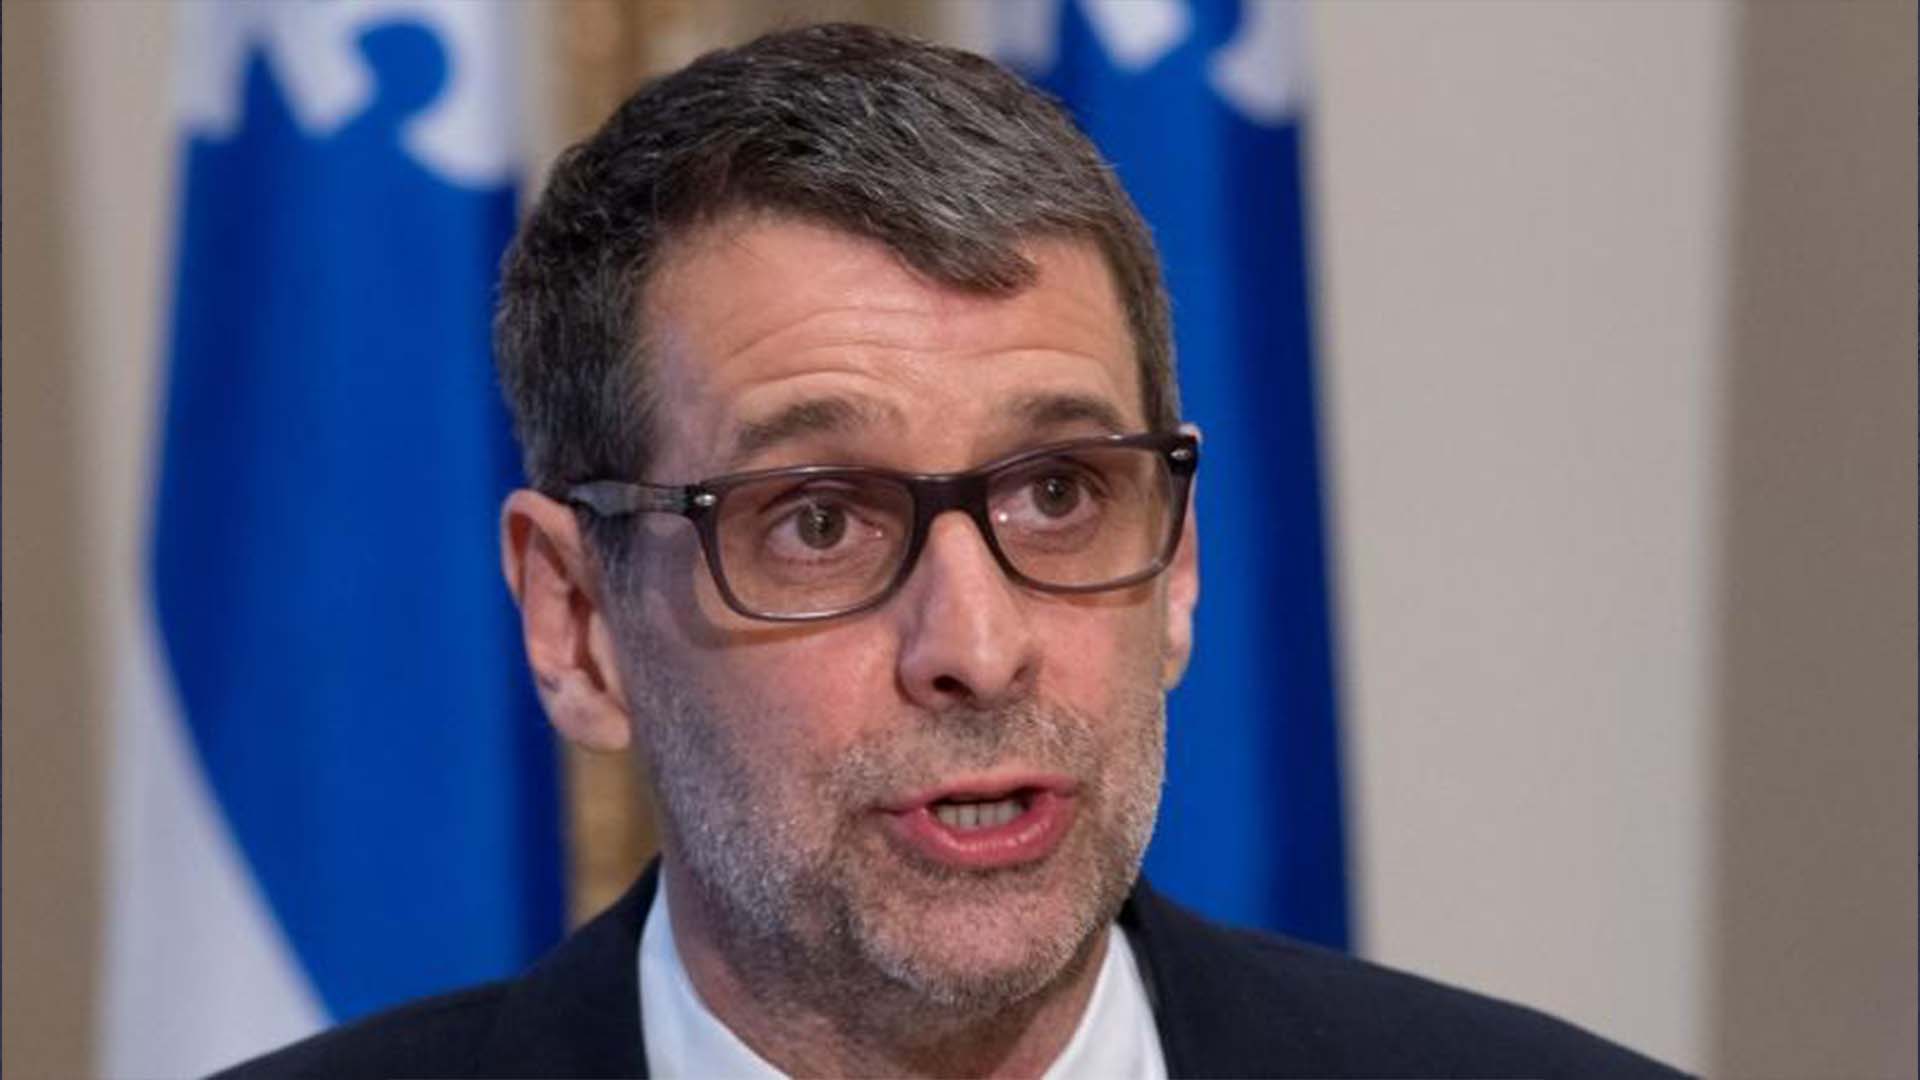 Le chef du Parti conservateur du Québec, Éric Duhaime, prend la parole lors d'une conférence de presse, le vendredi 18 juin 2021, à l'Assemblée législative de Québec.